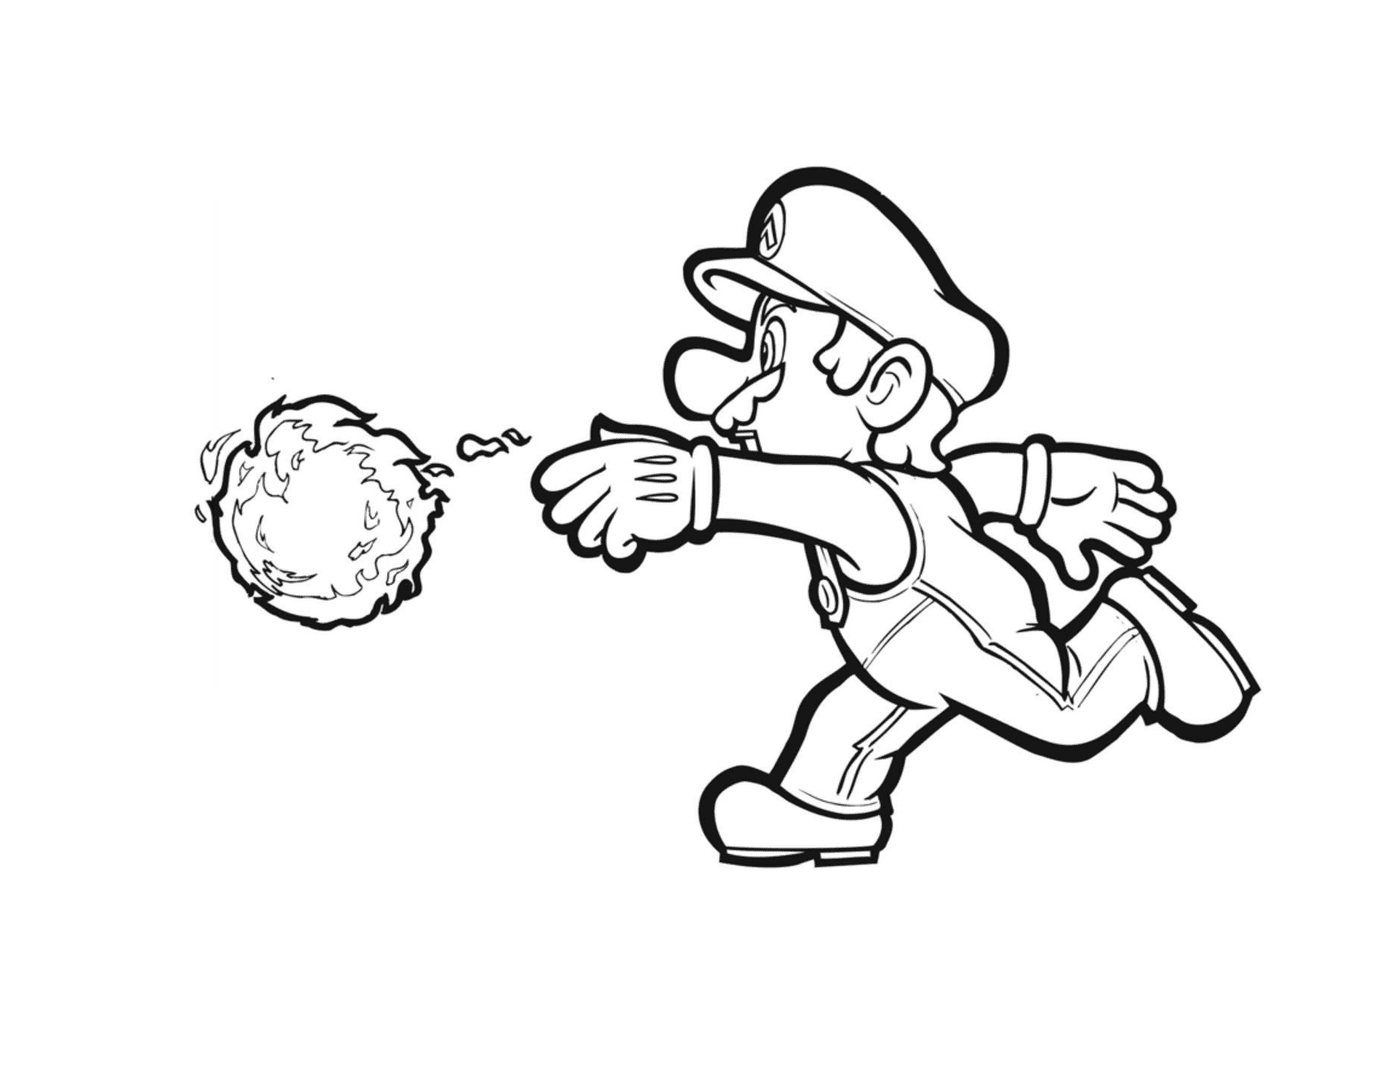  Mario lança bola de fogo com precisão 